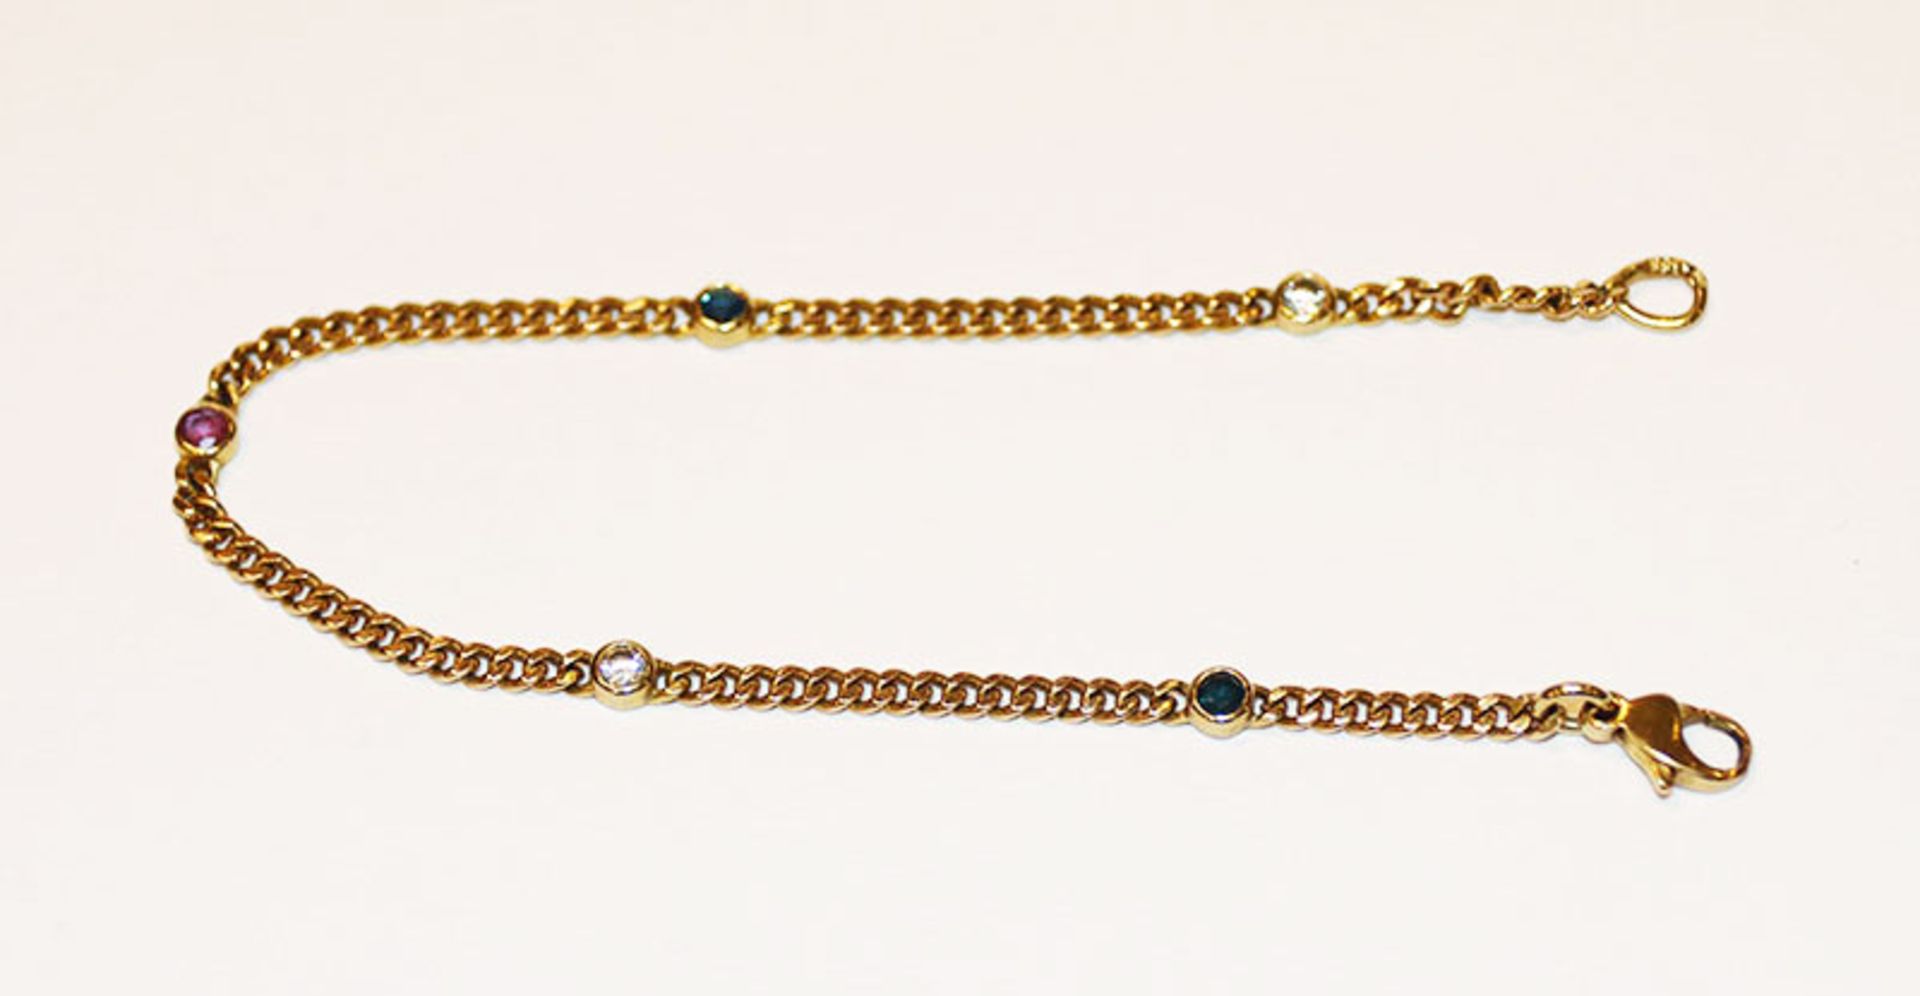 8 k Gelbgold Armband mit 2 kleinen Diamanten, 2 Safiren und 1 Rubin, 4,4gr., L 18 cm